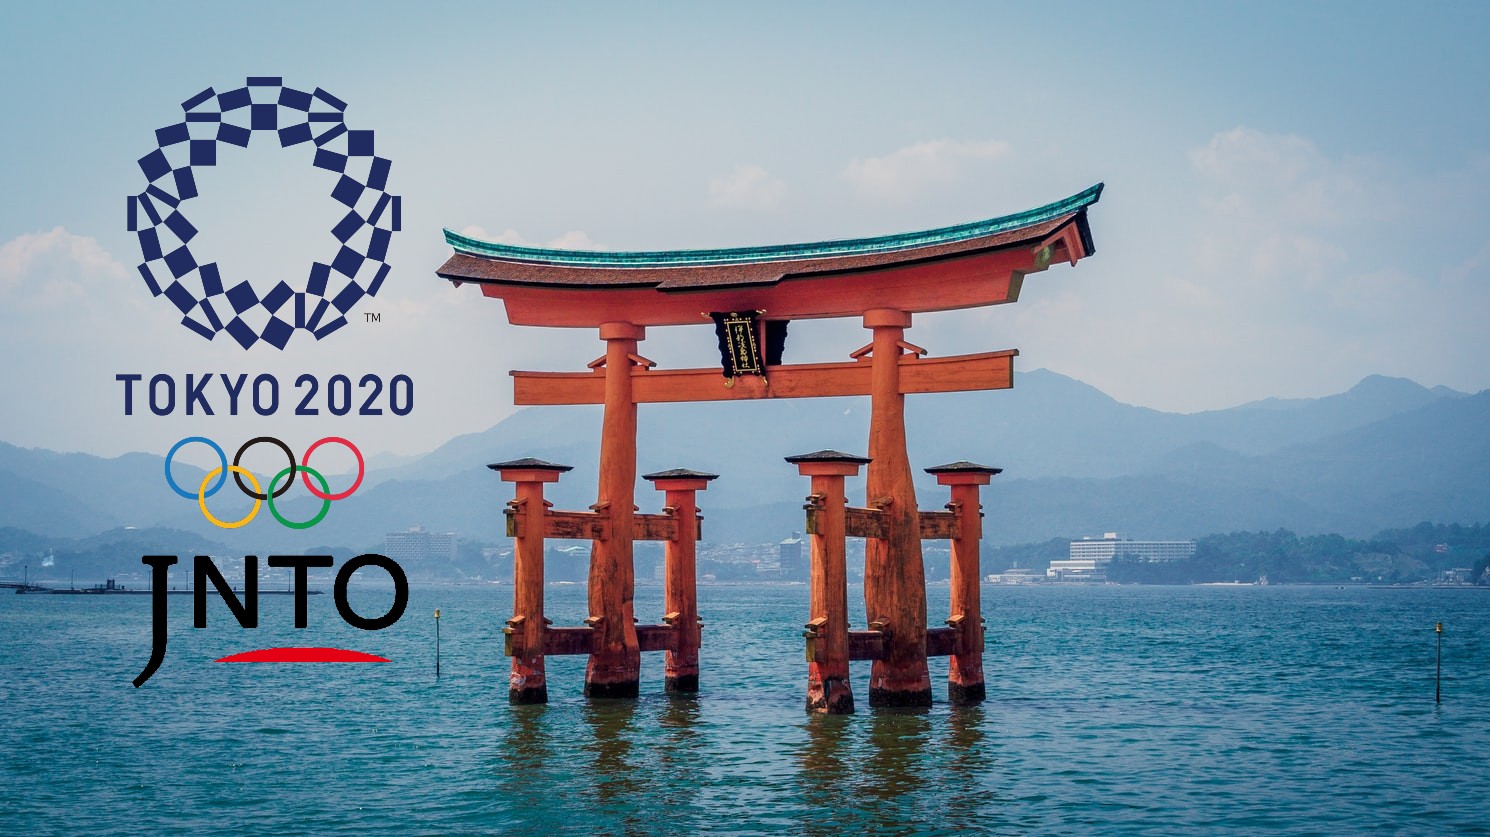 pagoda en el agua, logos de JNTO y Tokio 2020, Japón